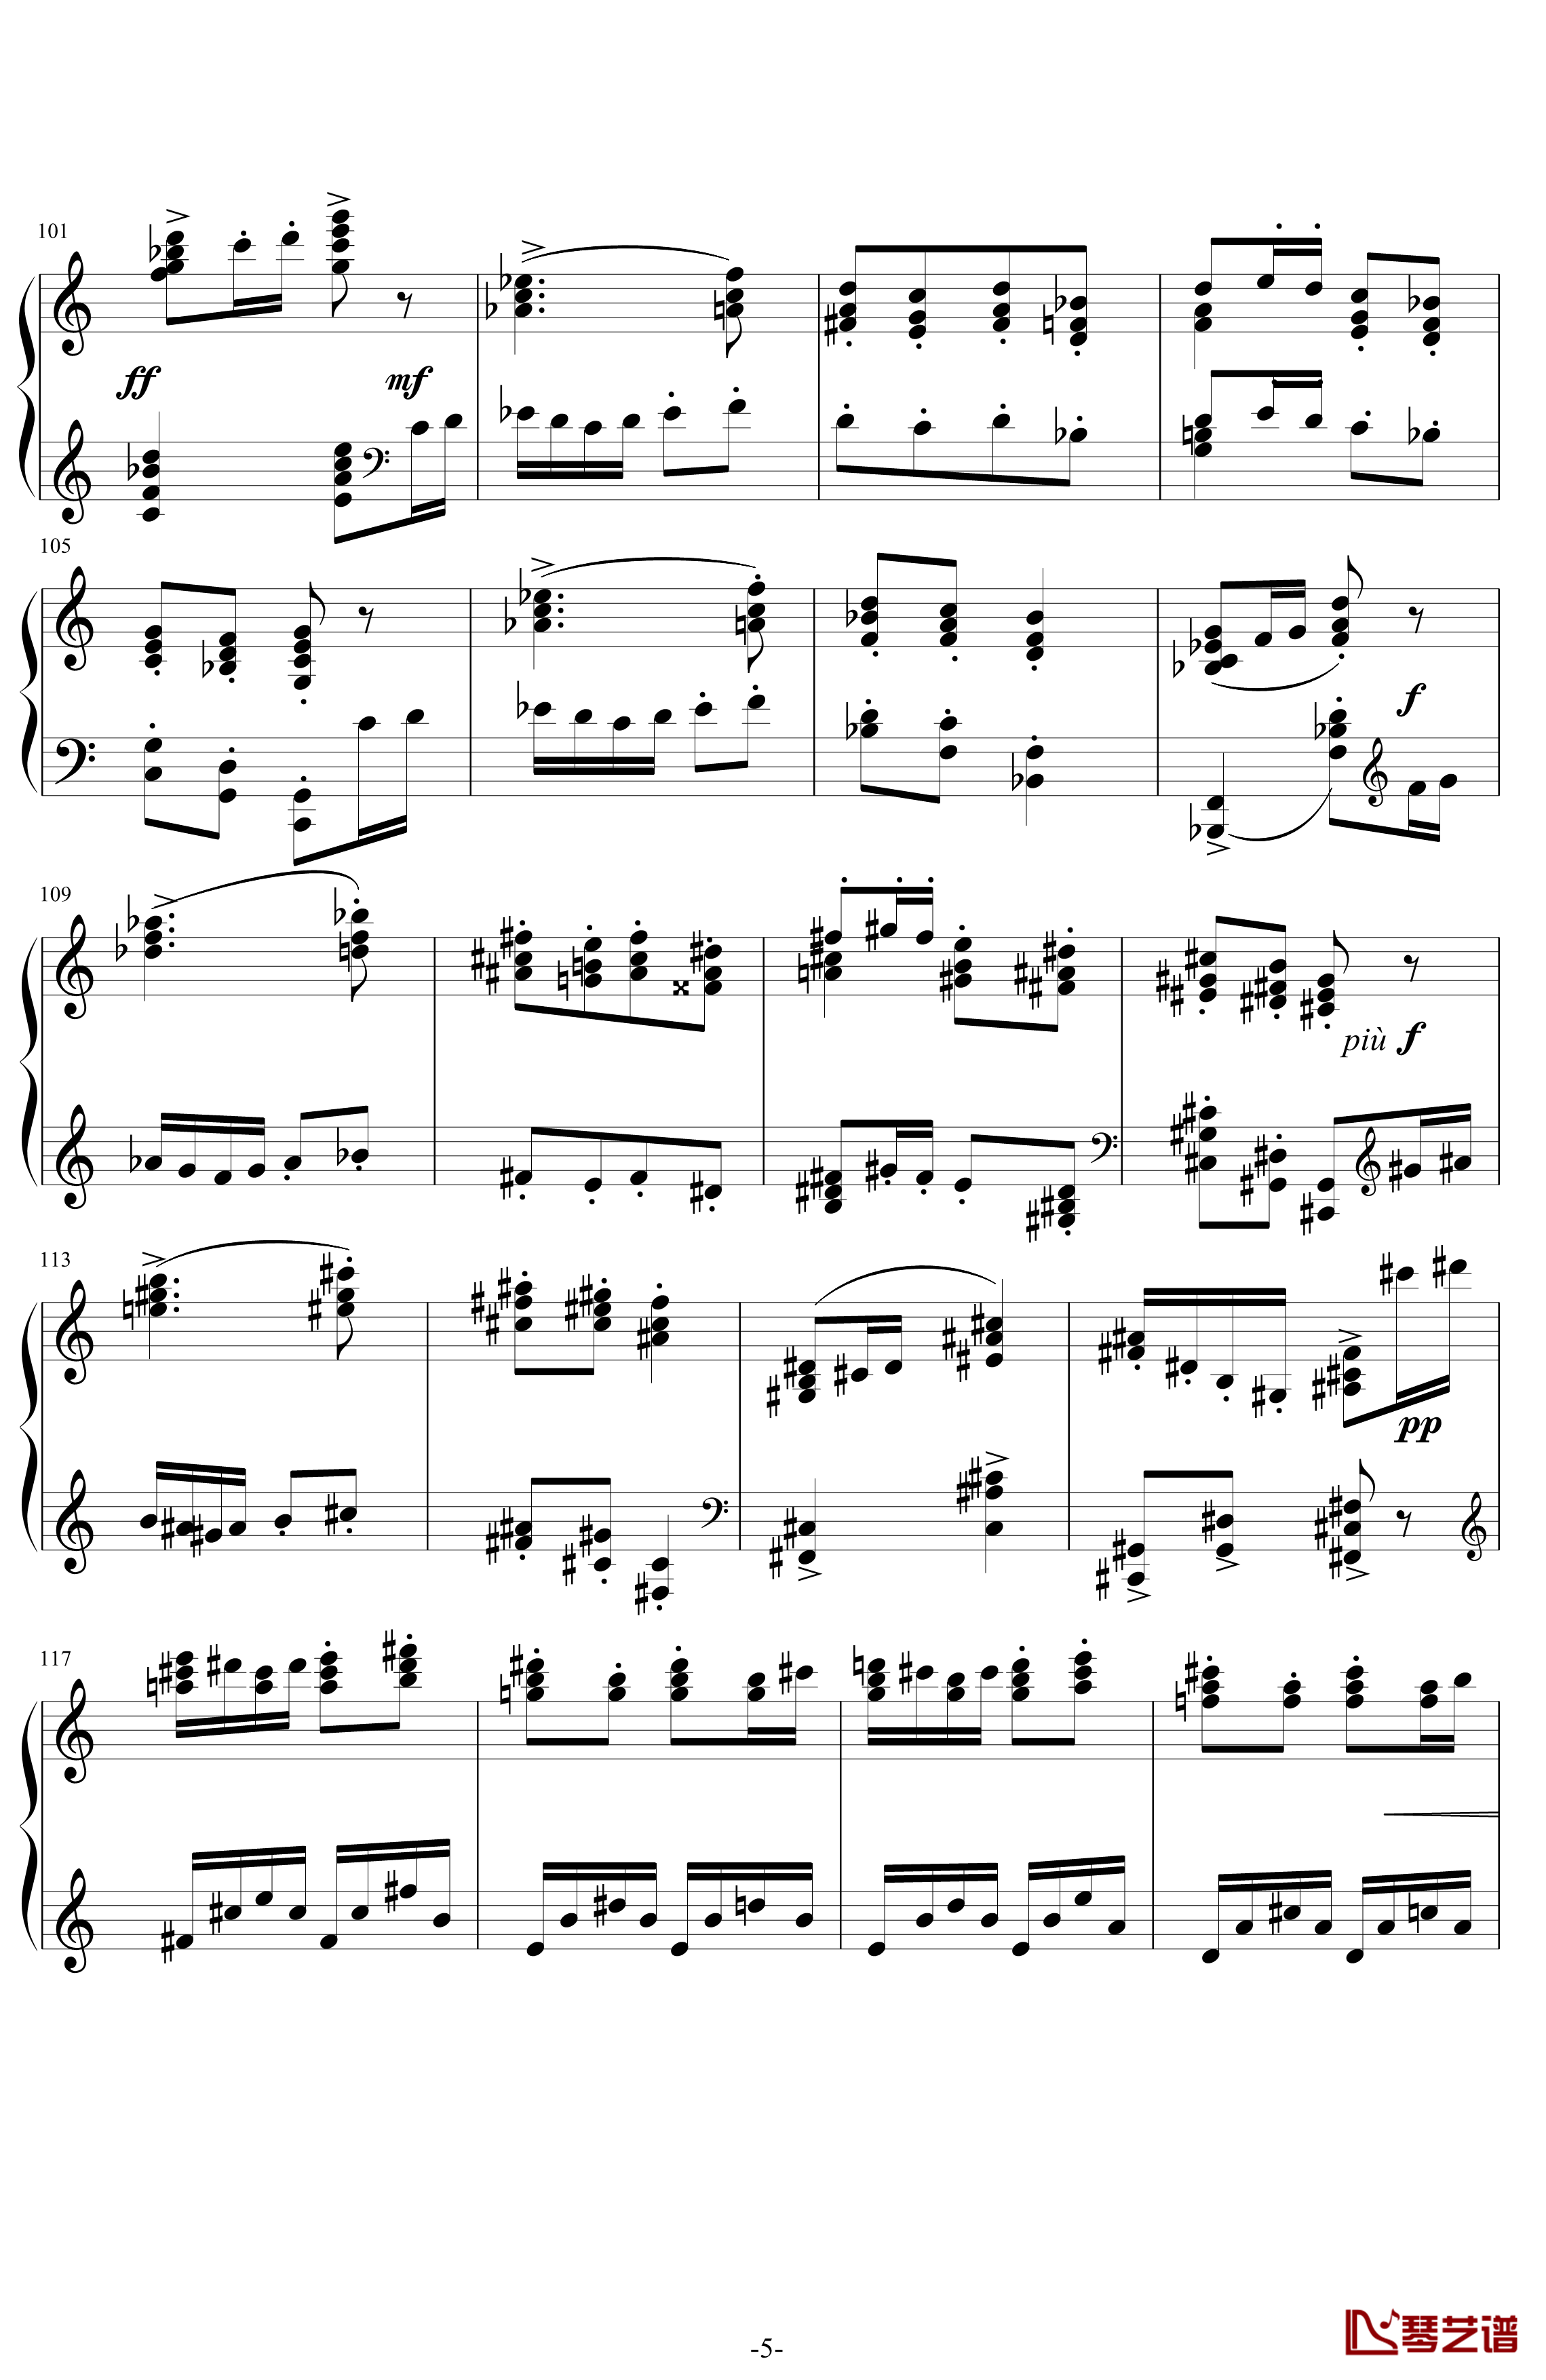 利戈顿舞曲钢琴谱-选自《库普兰之墓》-拉威尔-Ravel5